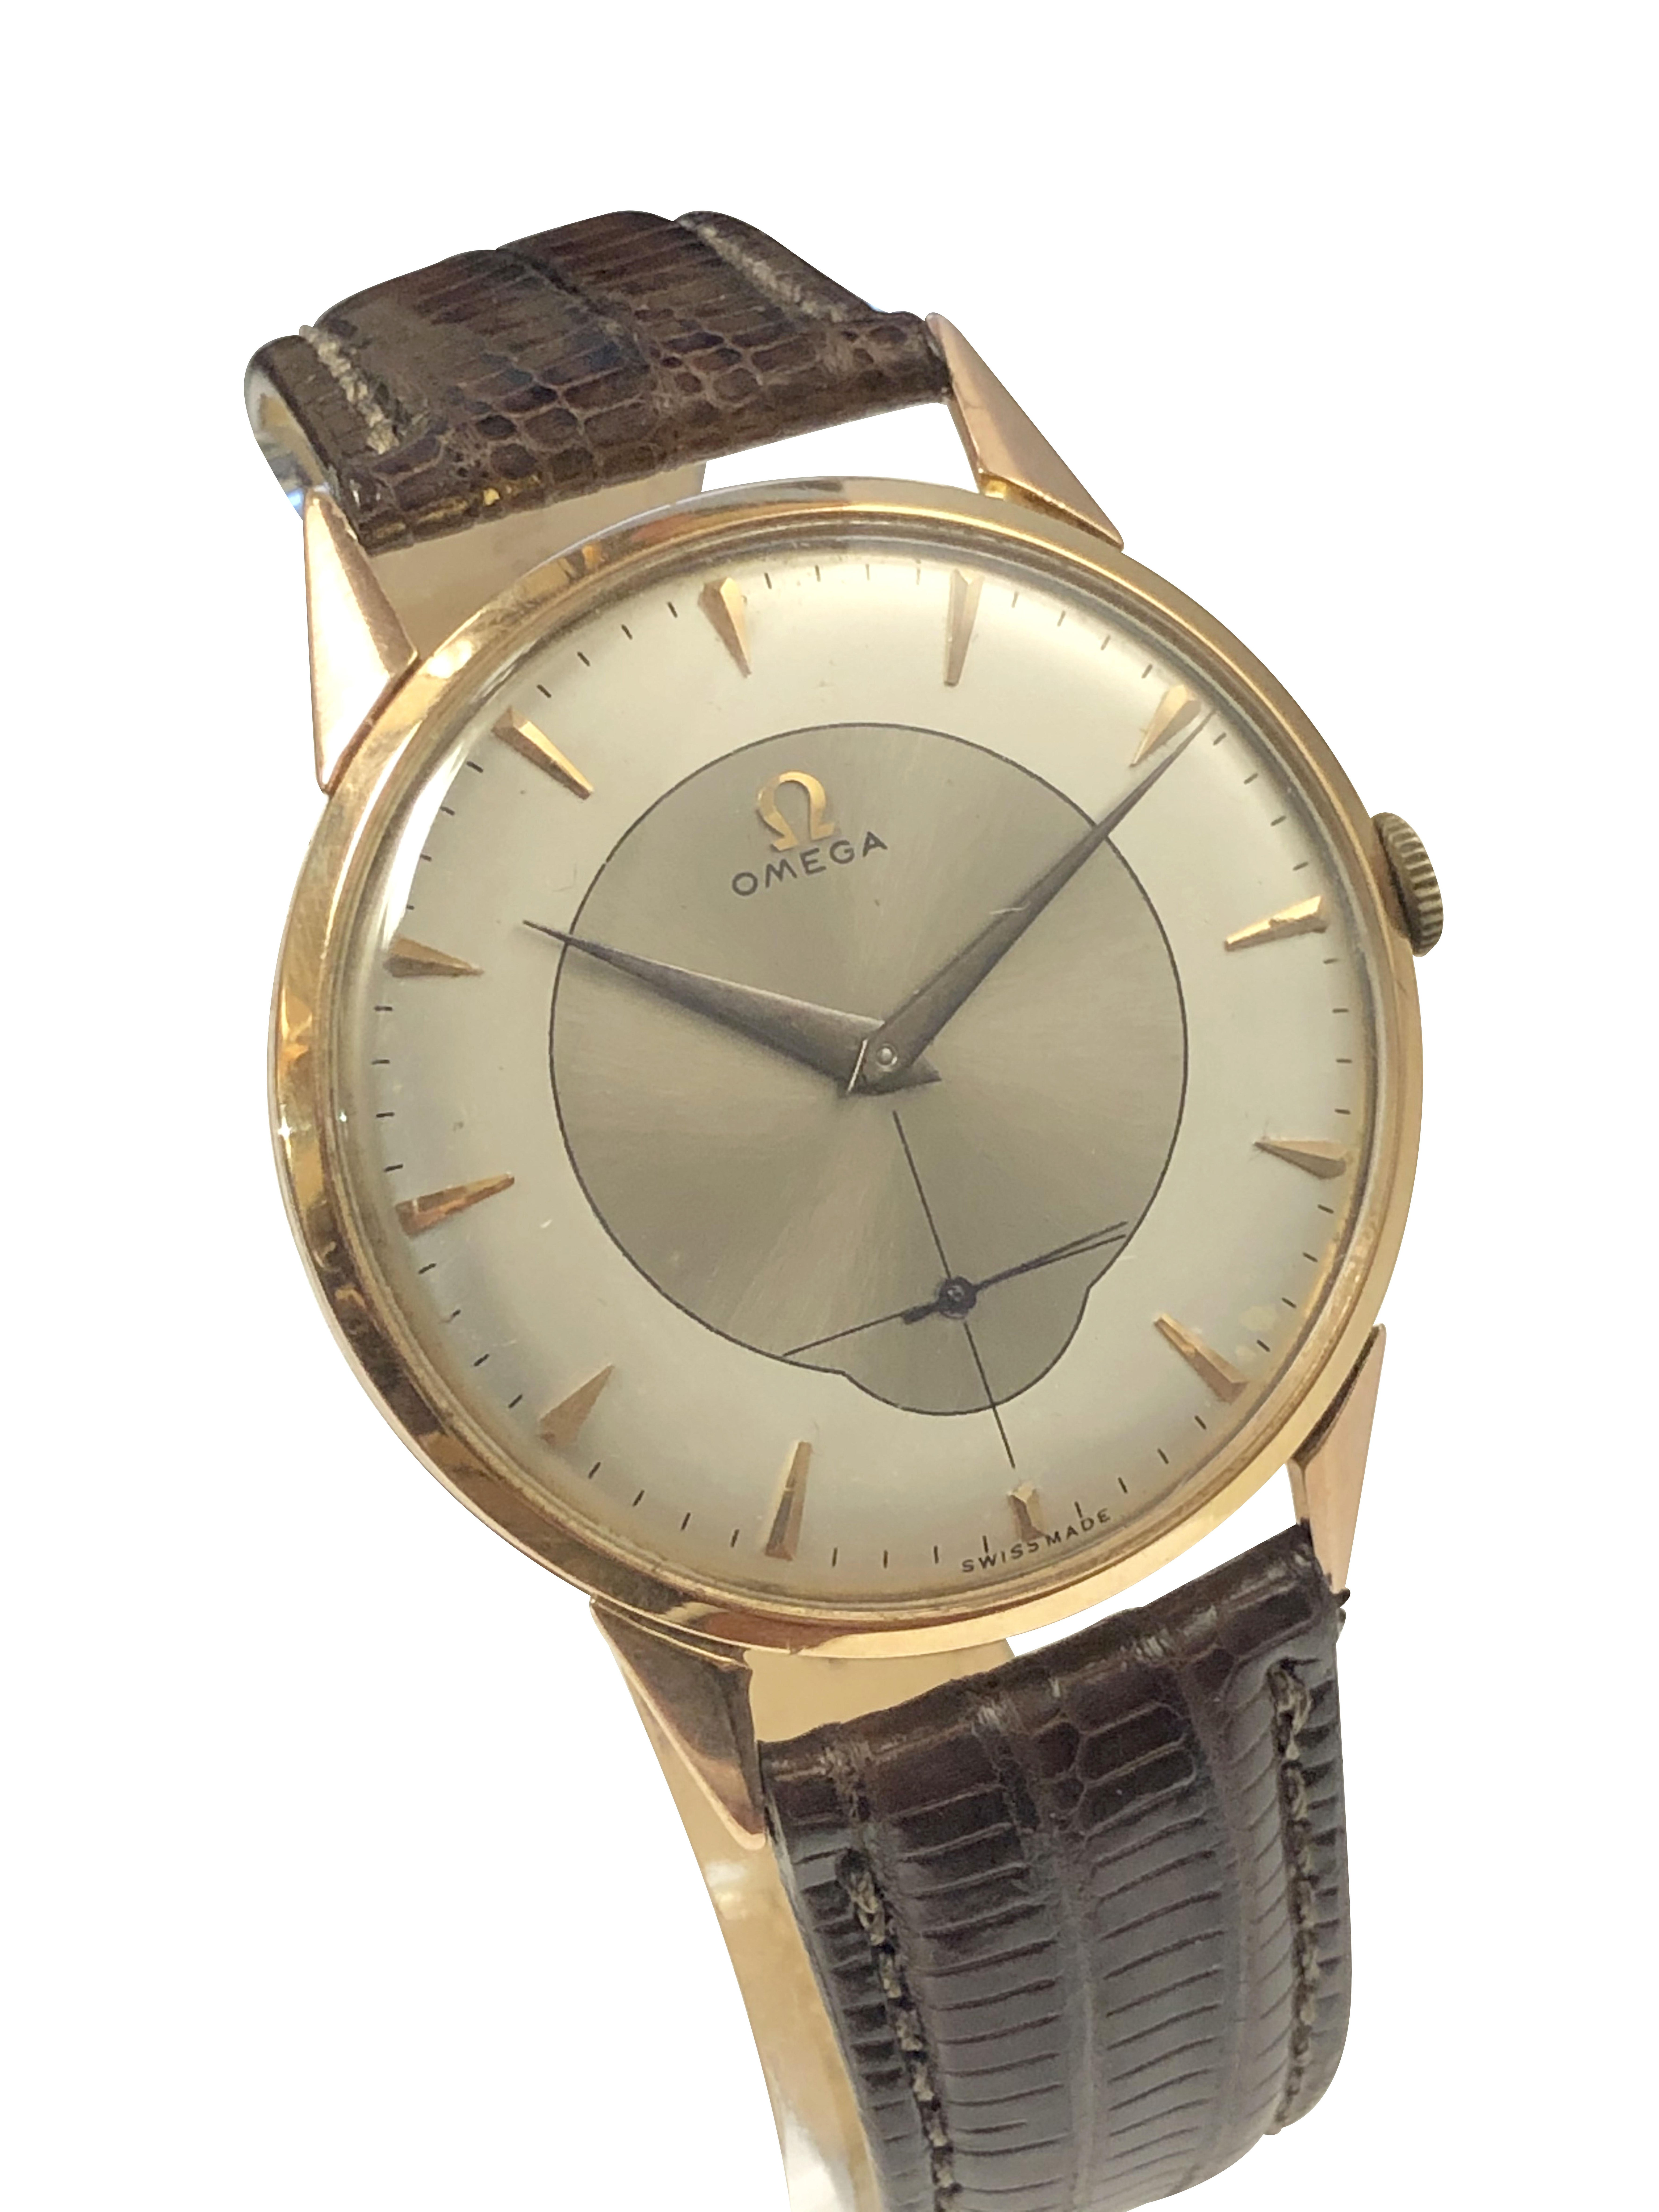 Circa 1940er Omega Armbanduhr für den südamerikanischen Markt, 37 M.M. 18K Rose Gold 3 Stück Fall, dies ist ein Original-Uhr mit einem nicht Omega unterzeichnet Fall speziell für den südamerikanischen Markt gemacht.  Omega Kaliber 265, 15 Juwelen